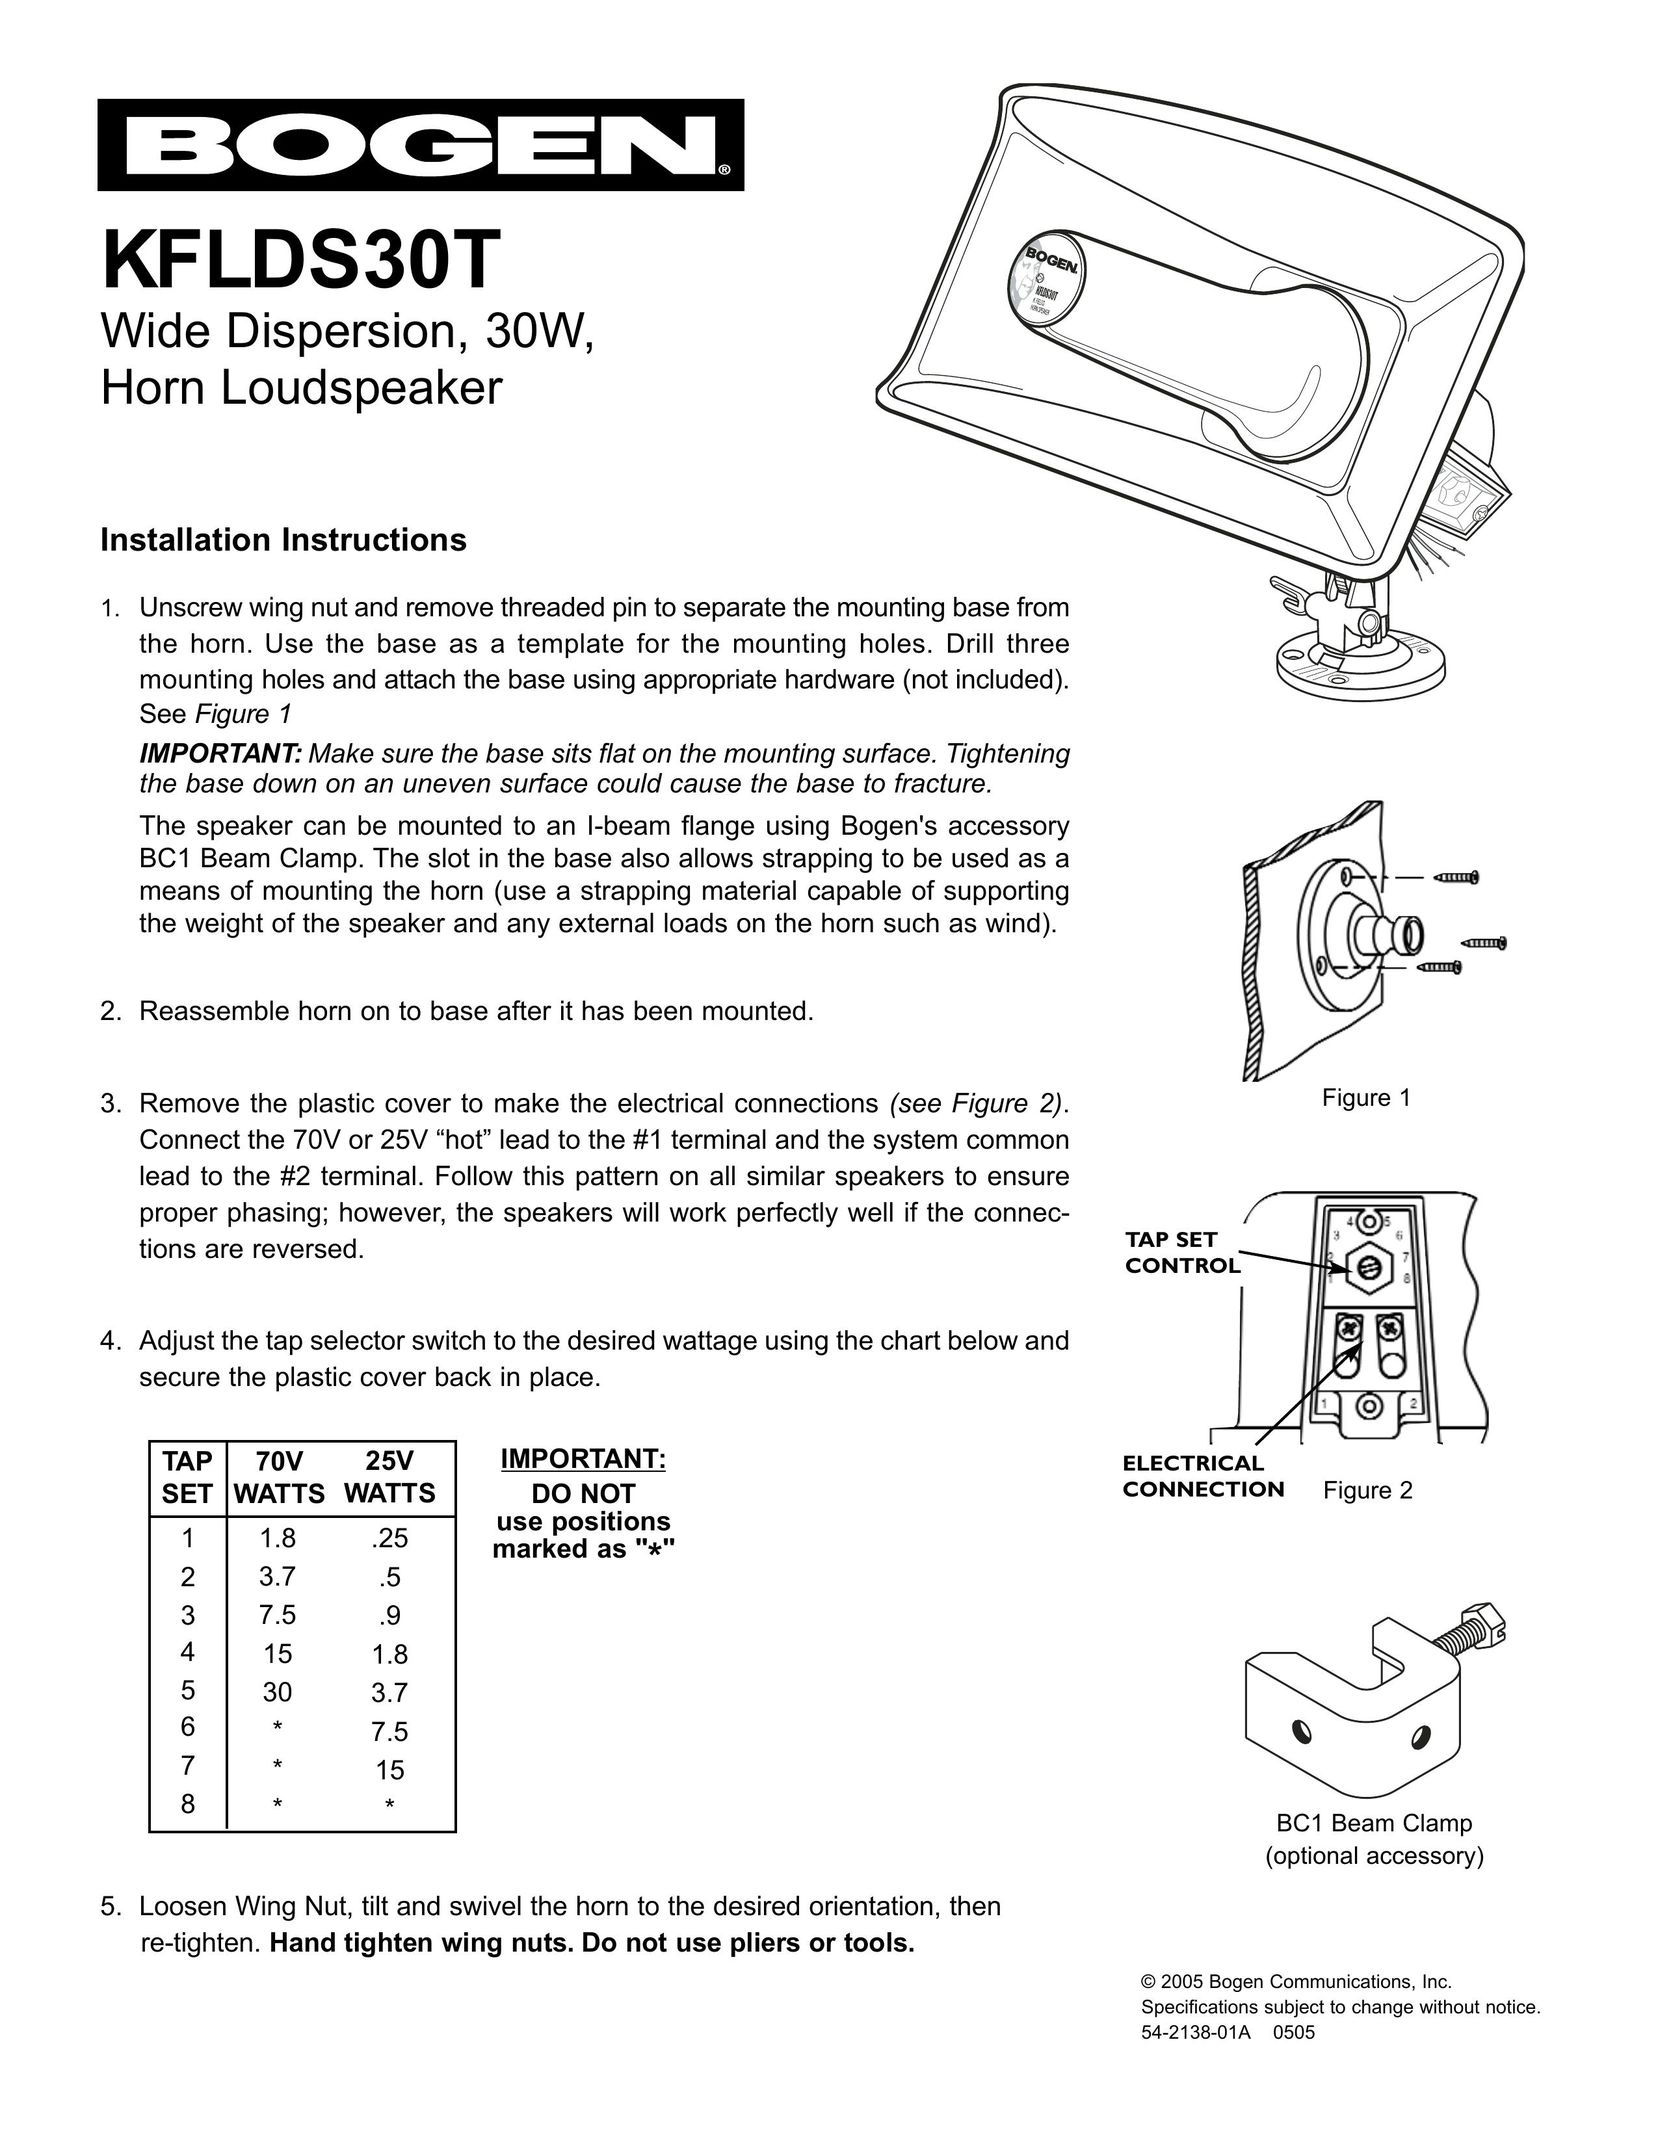 Bogen KFLDS30T Speaker User Manual